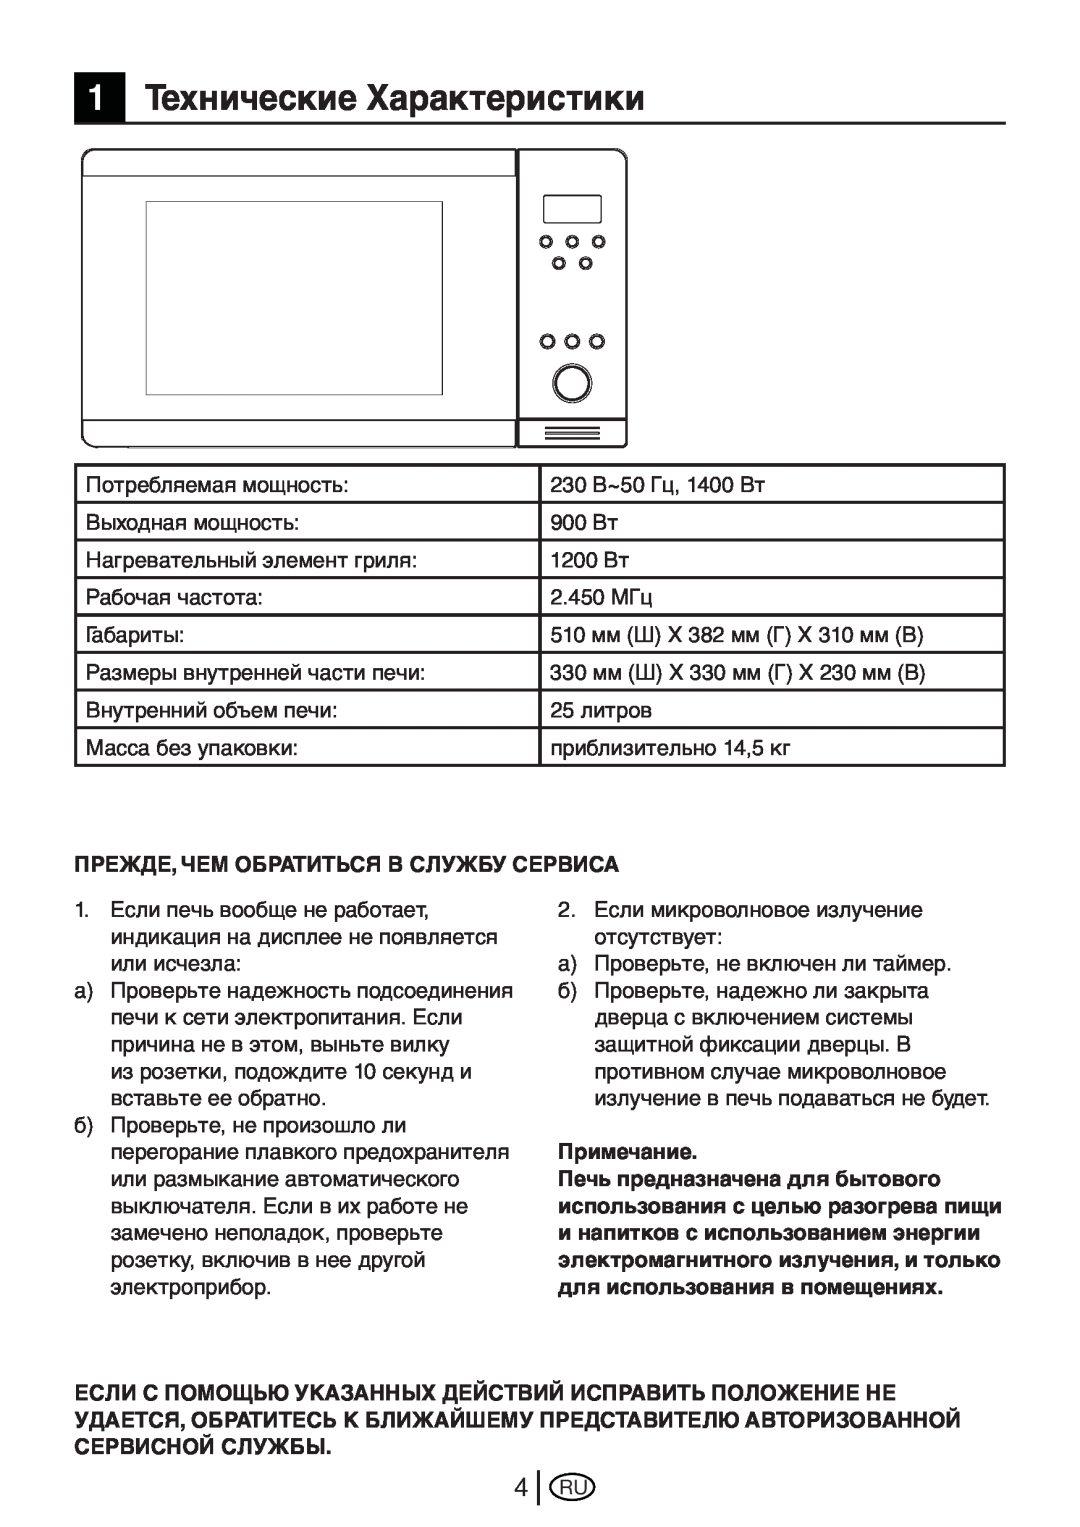 Beko MWB 2510 EX instruction manual 1Технические Характеристики 